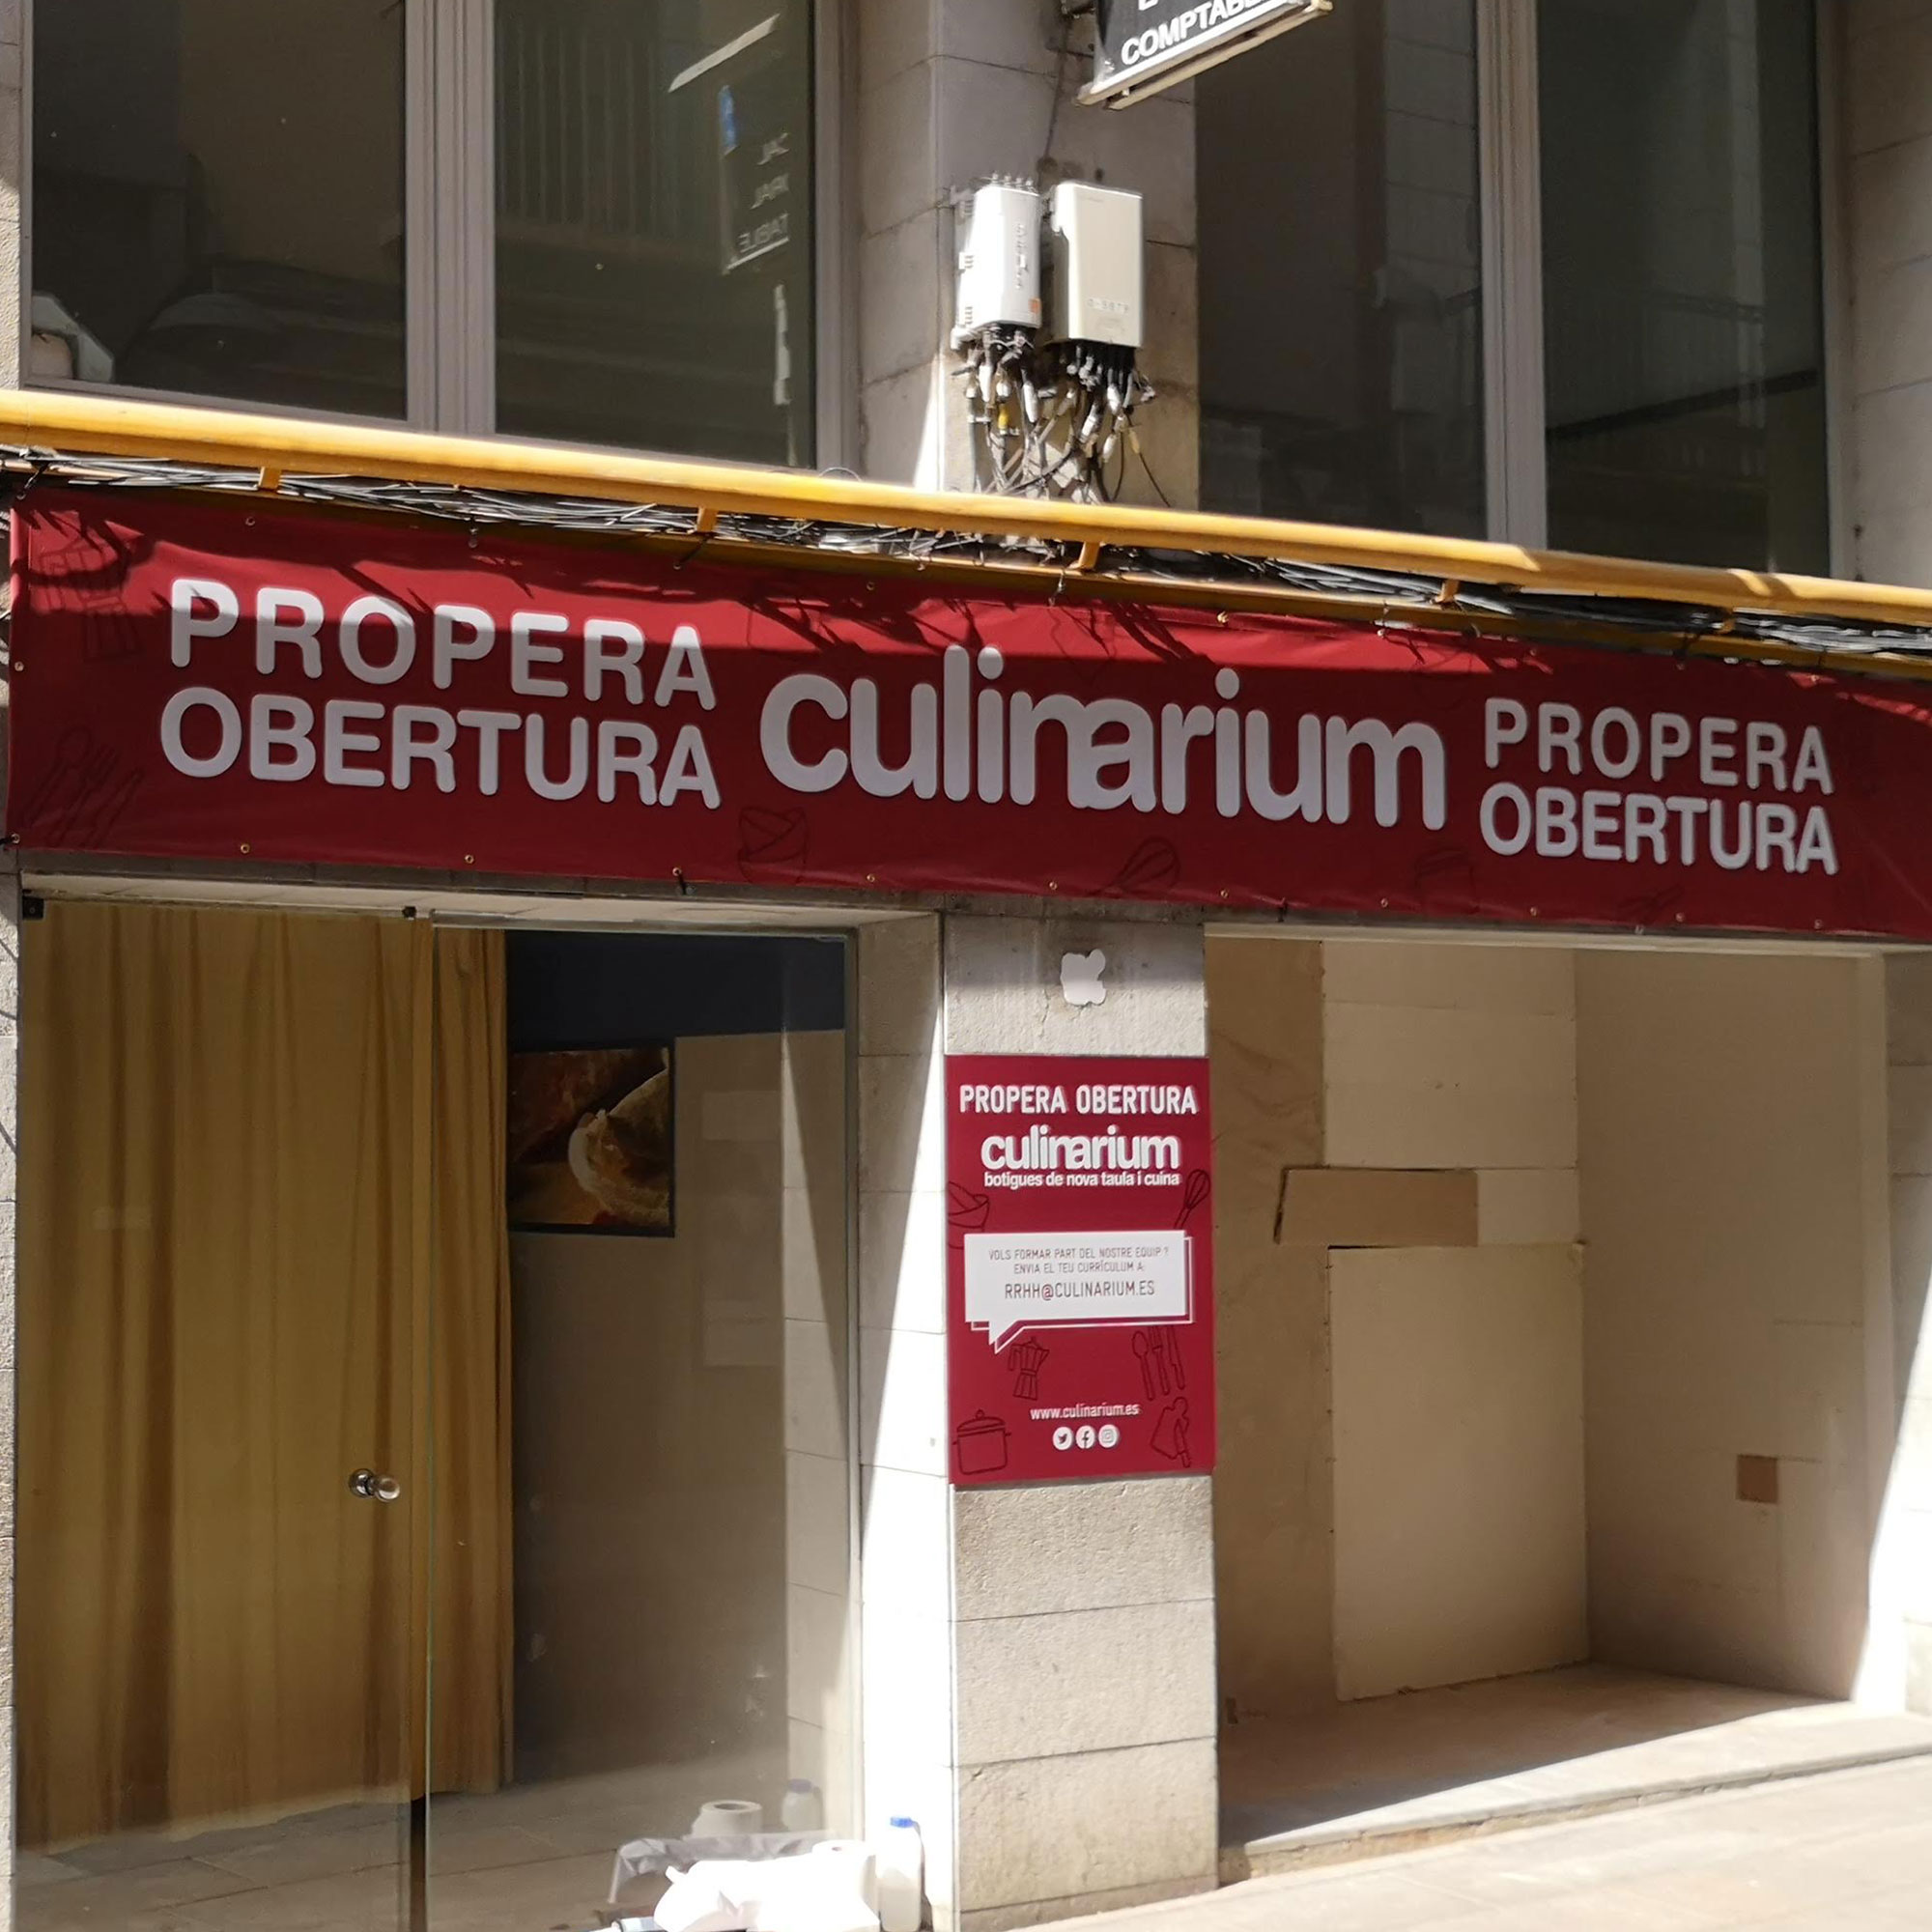 Pancartes i lones a Girona - culinarium